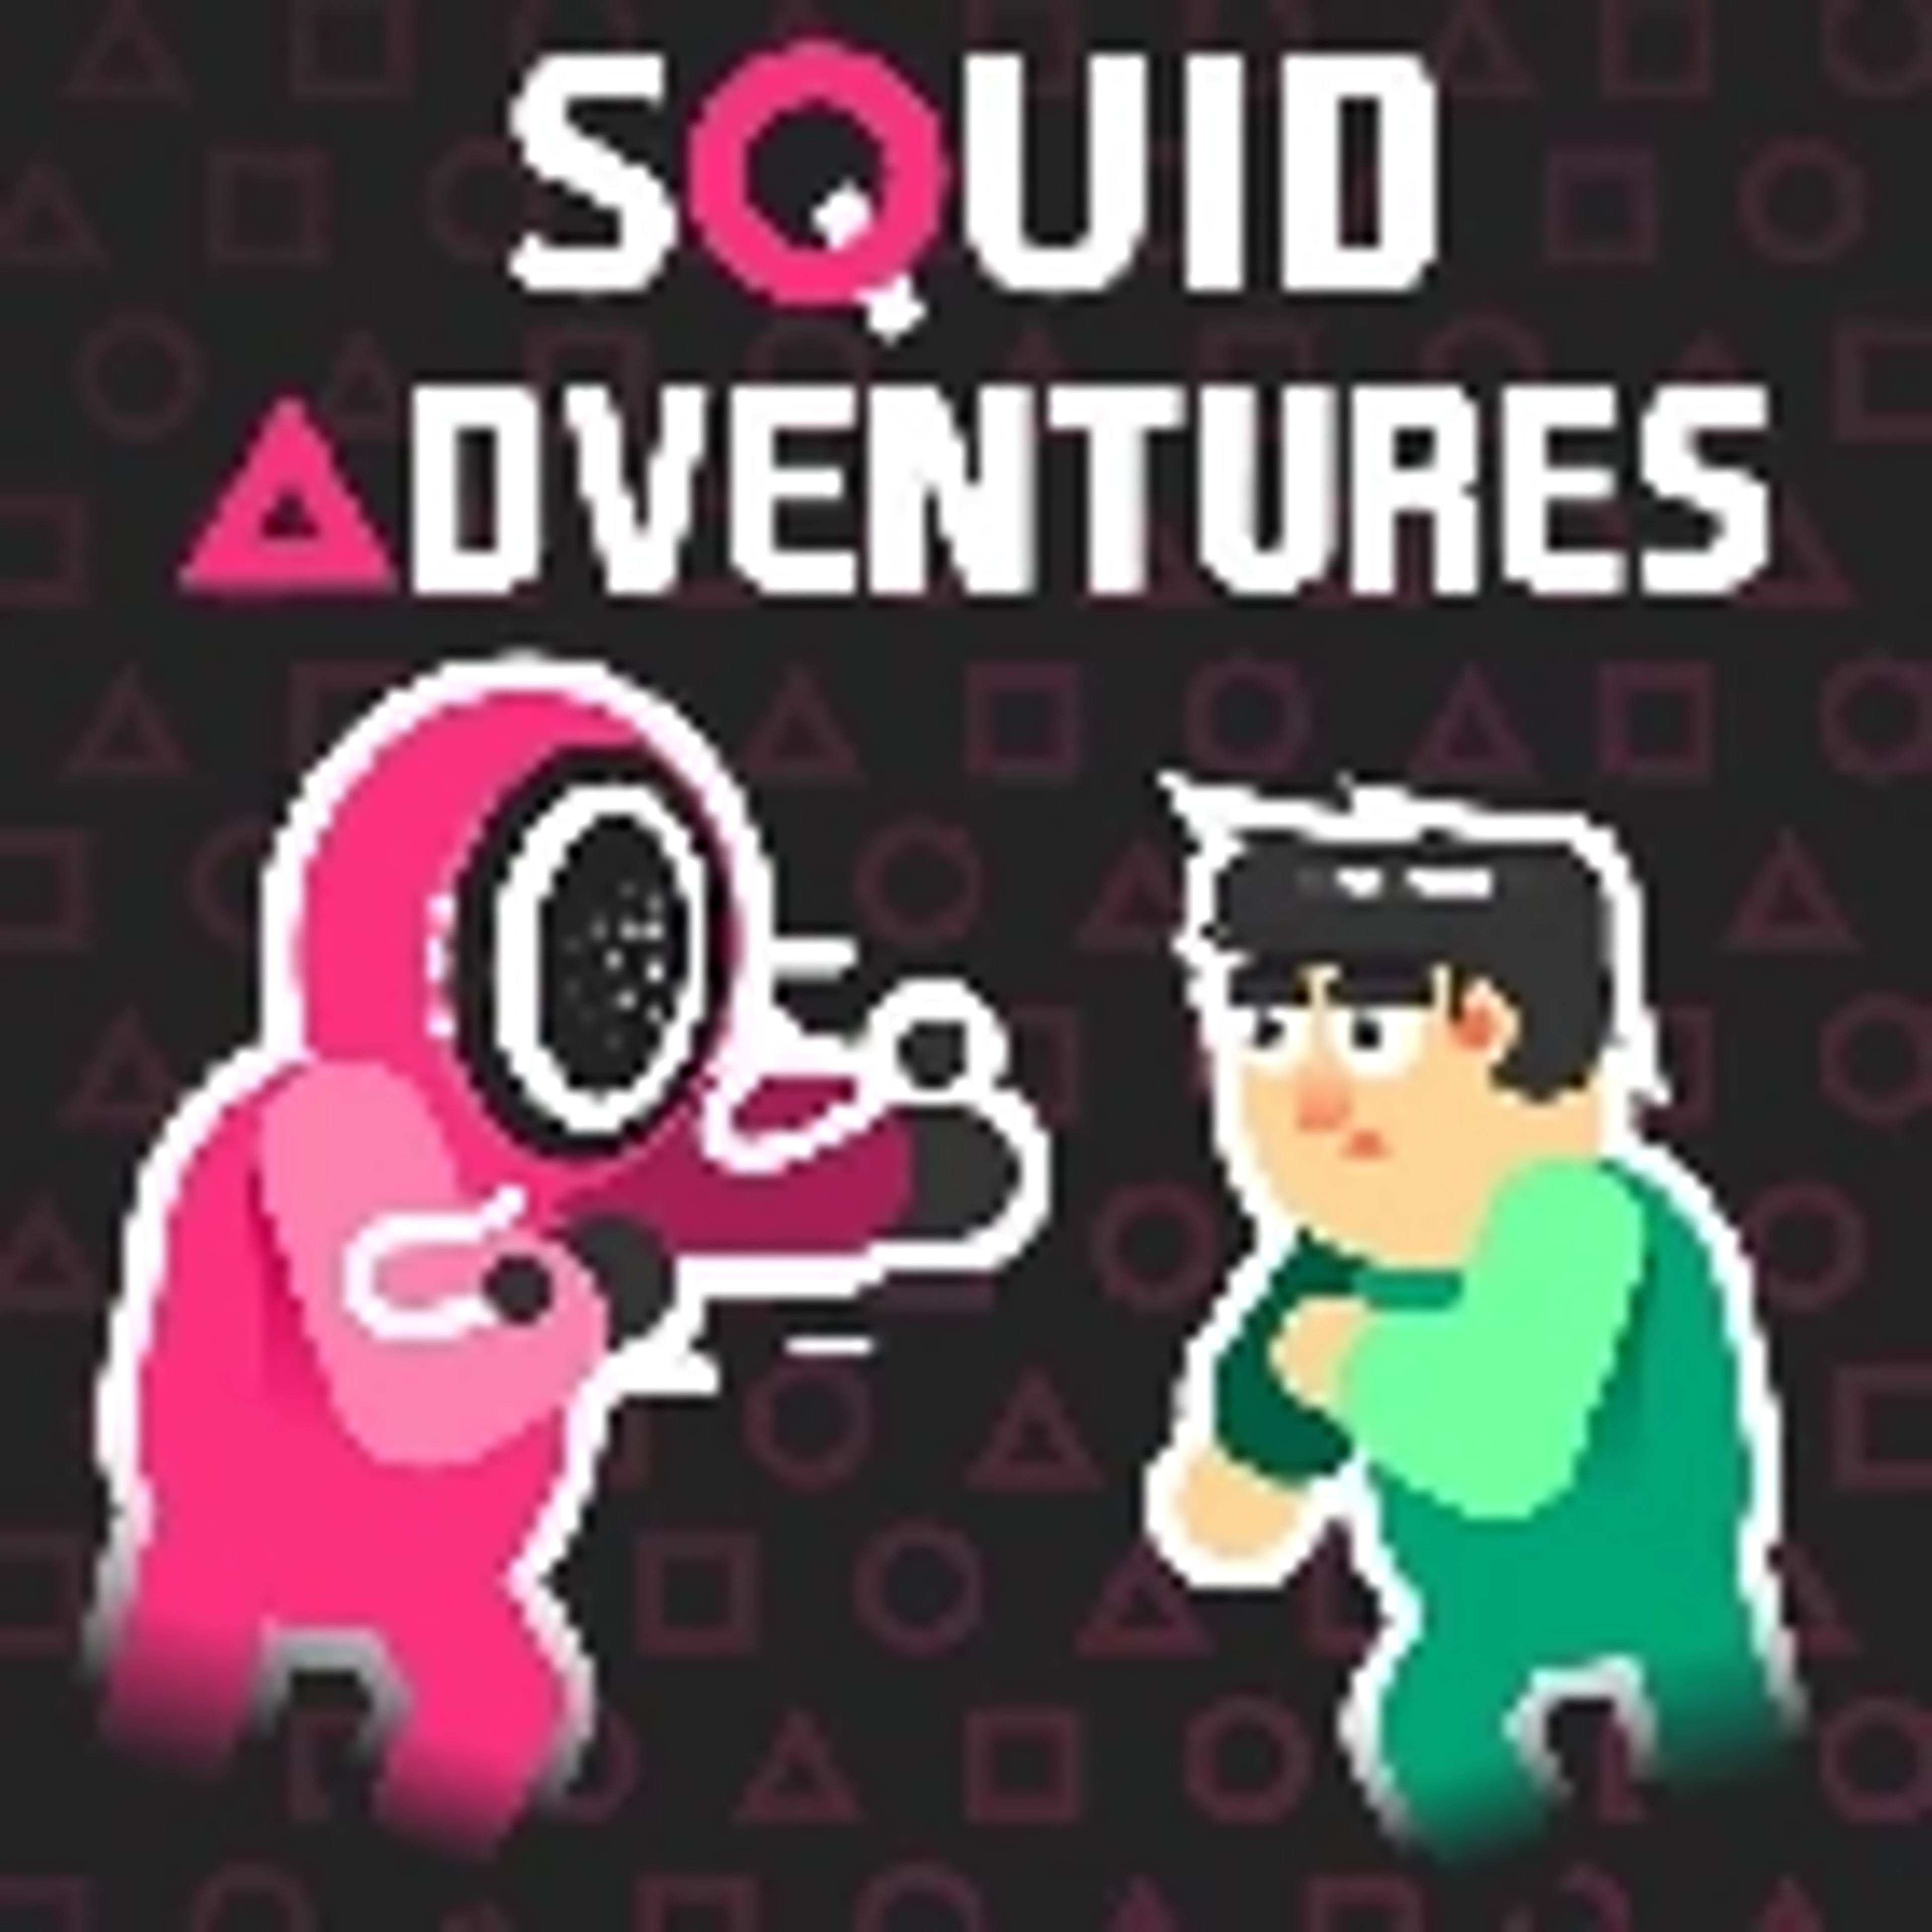 Squid Adventures